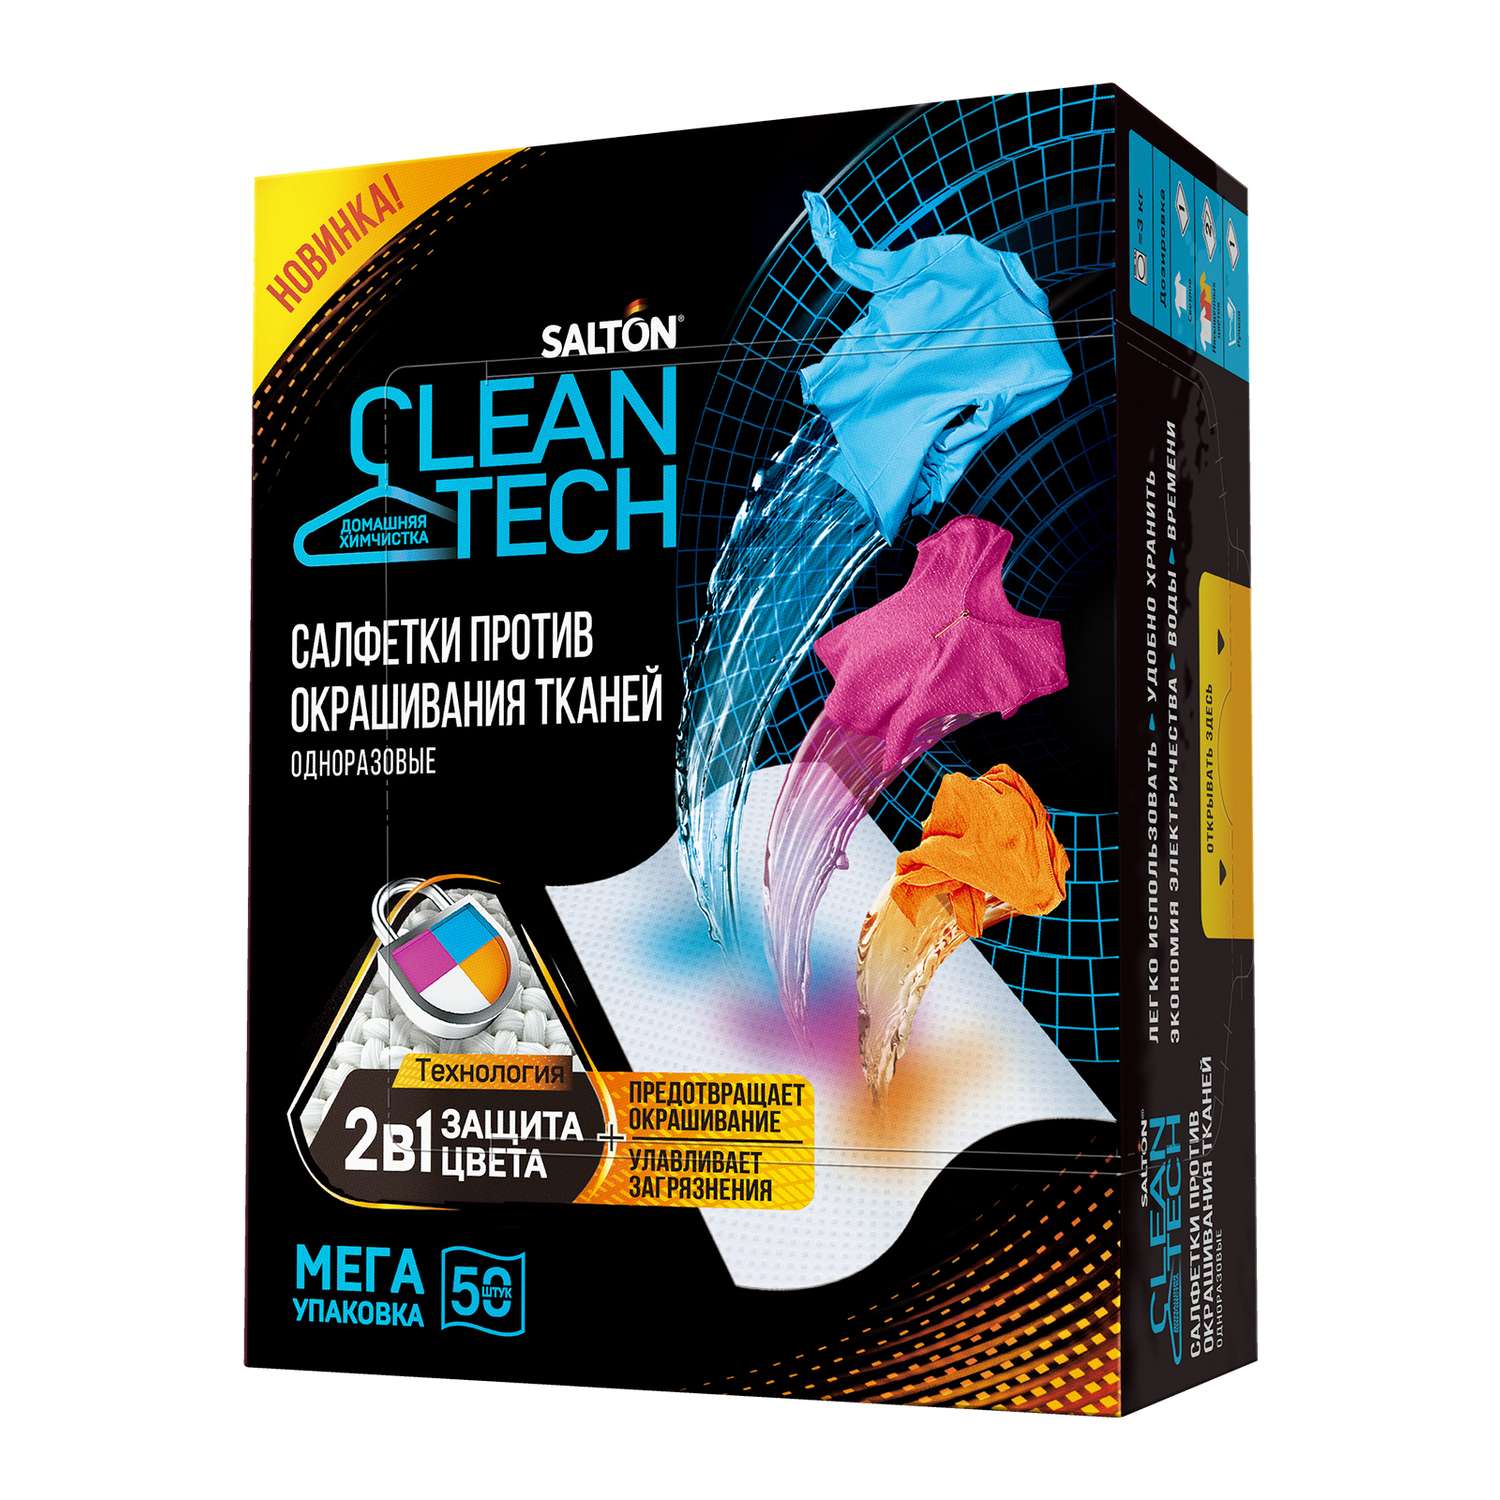 Салфетки Salton Cleantech против окрашивания тканей 50шт в упаковке - фото 1